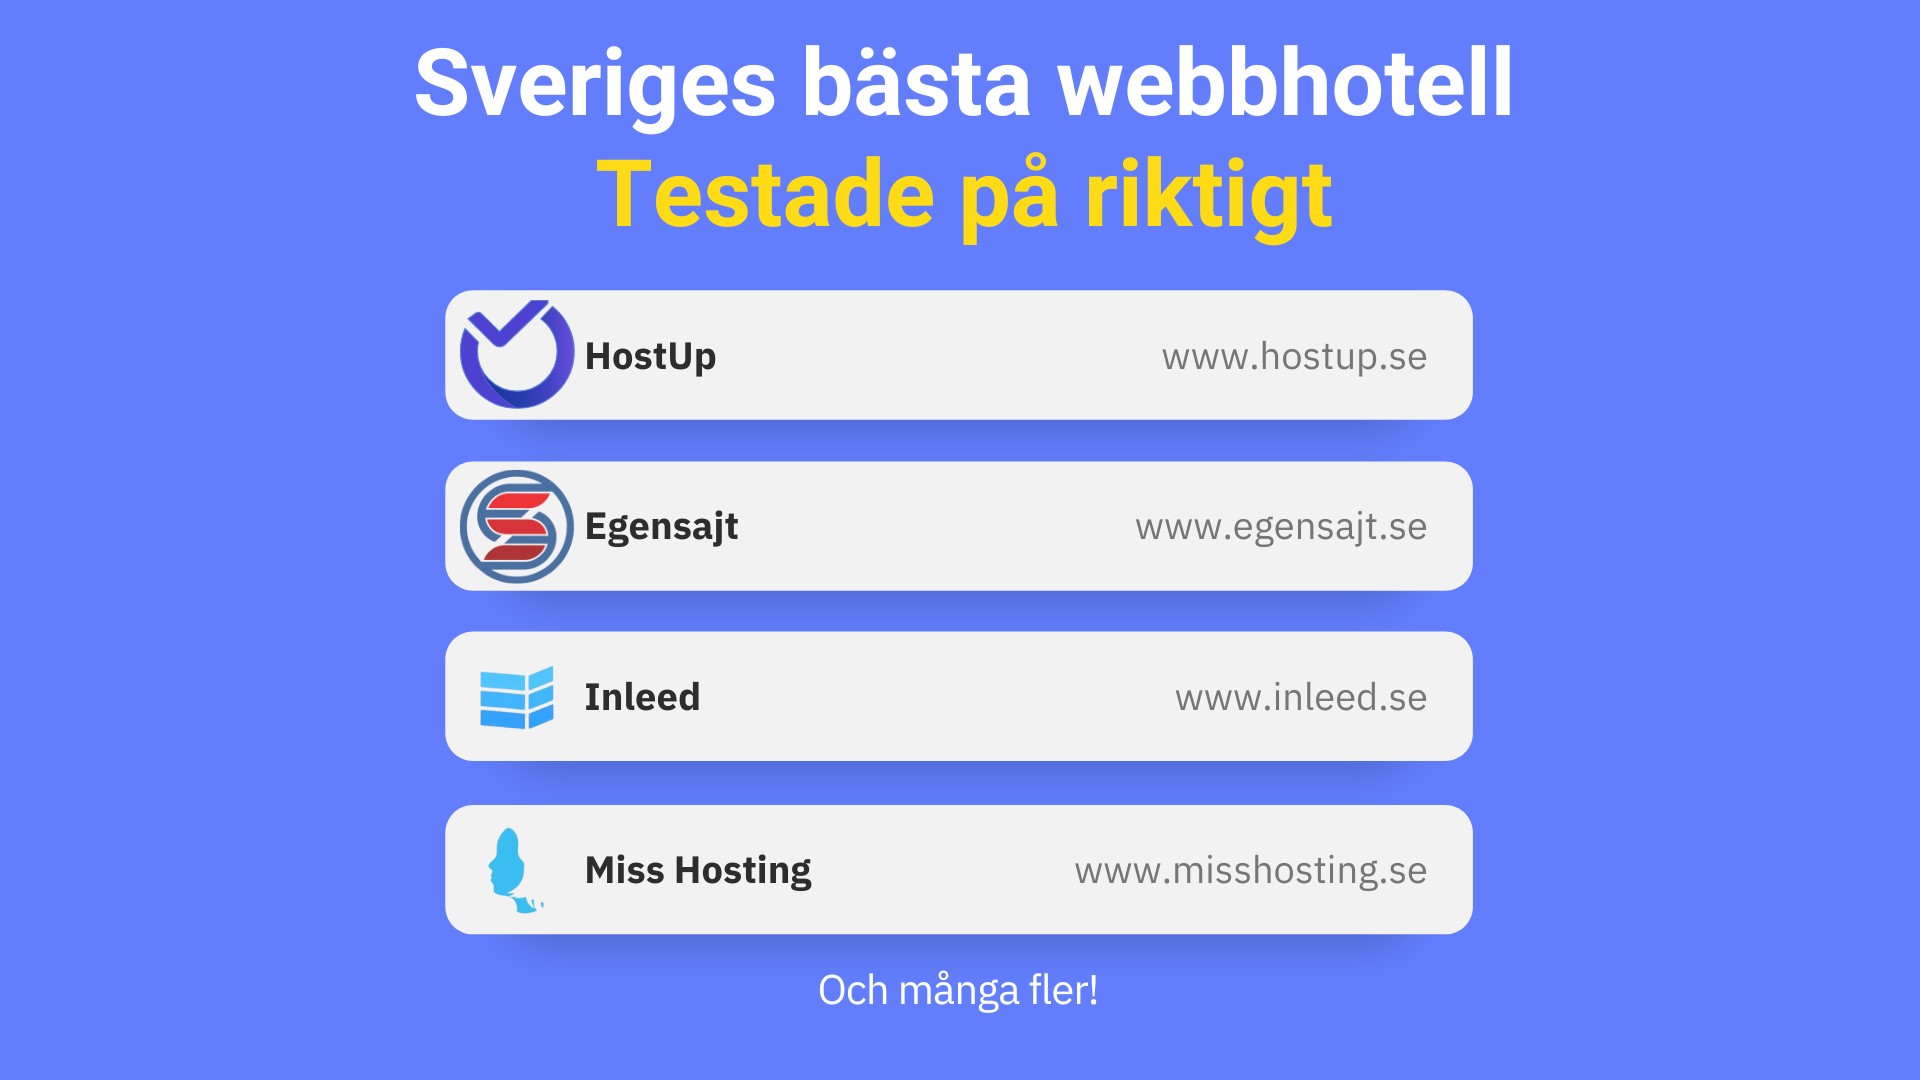 Bästa webbhotell med en lista på några av de webbhotell vi har testat. Listan inkluderar HostUp, Egensajt, Inleed samt Miss Hosting.